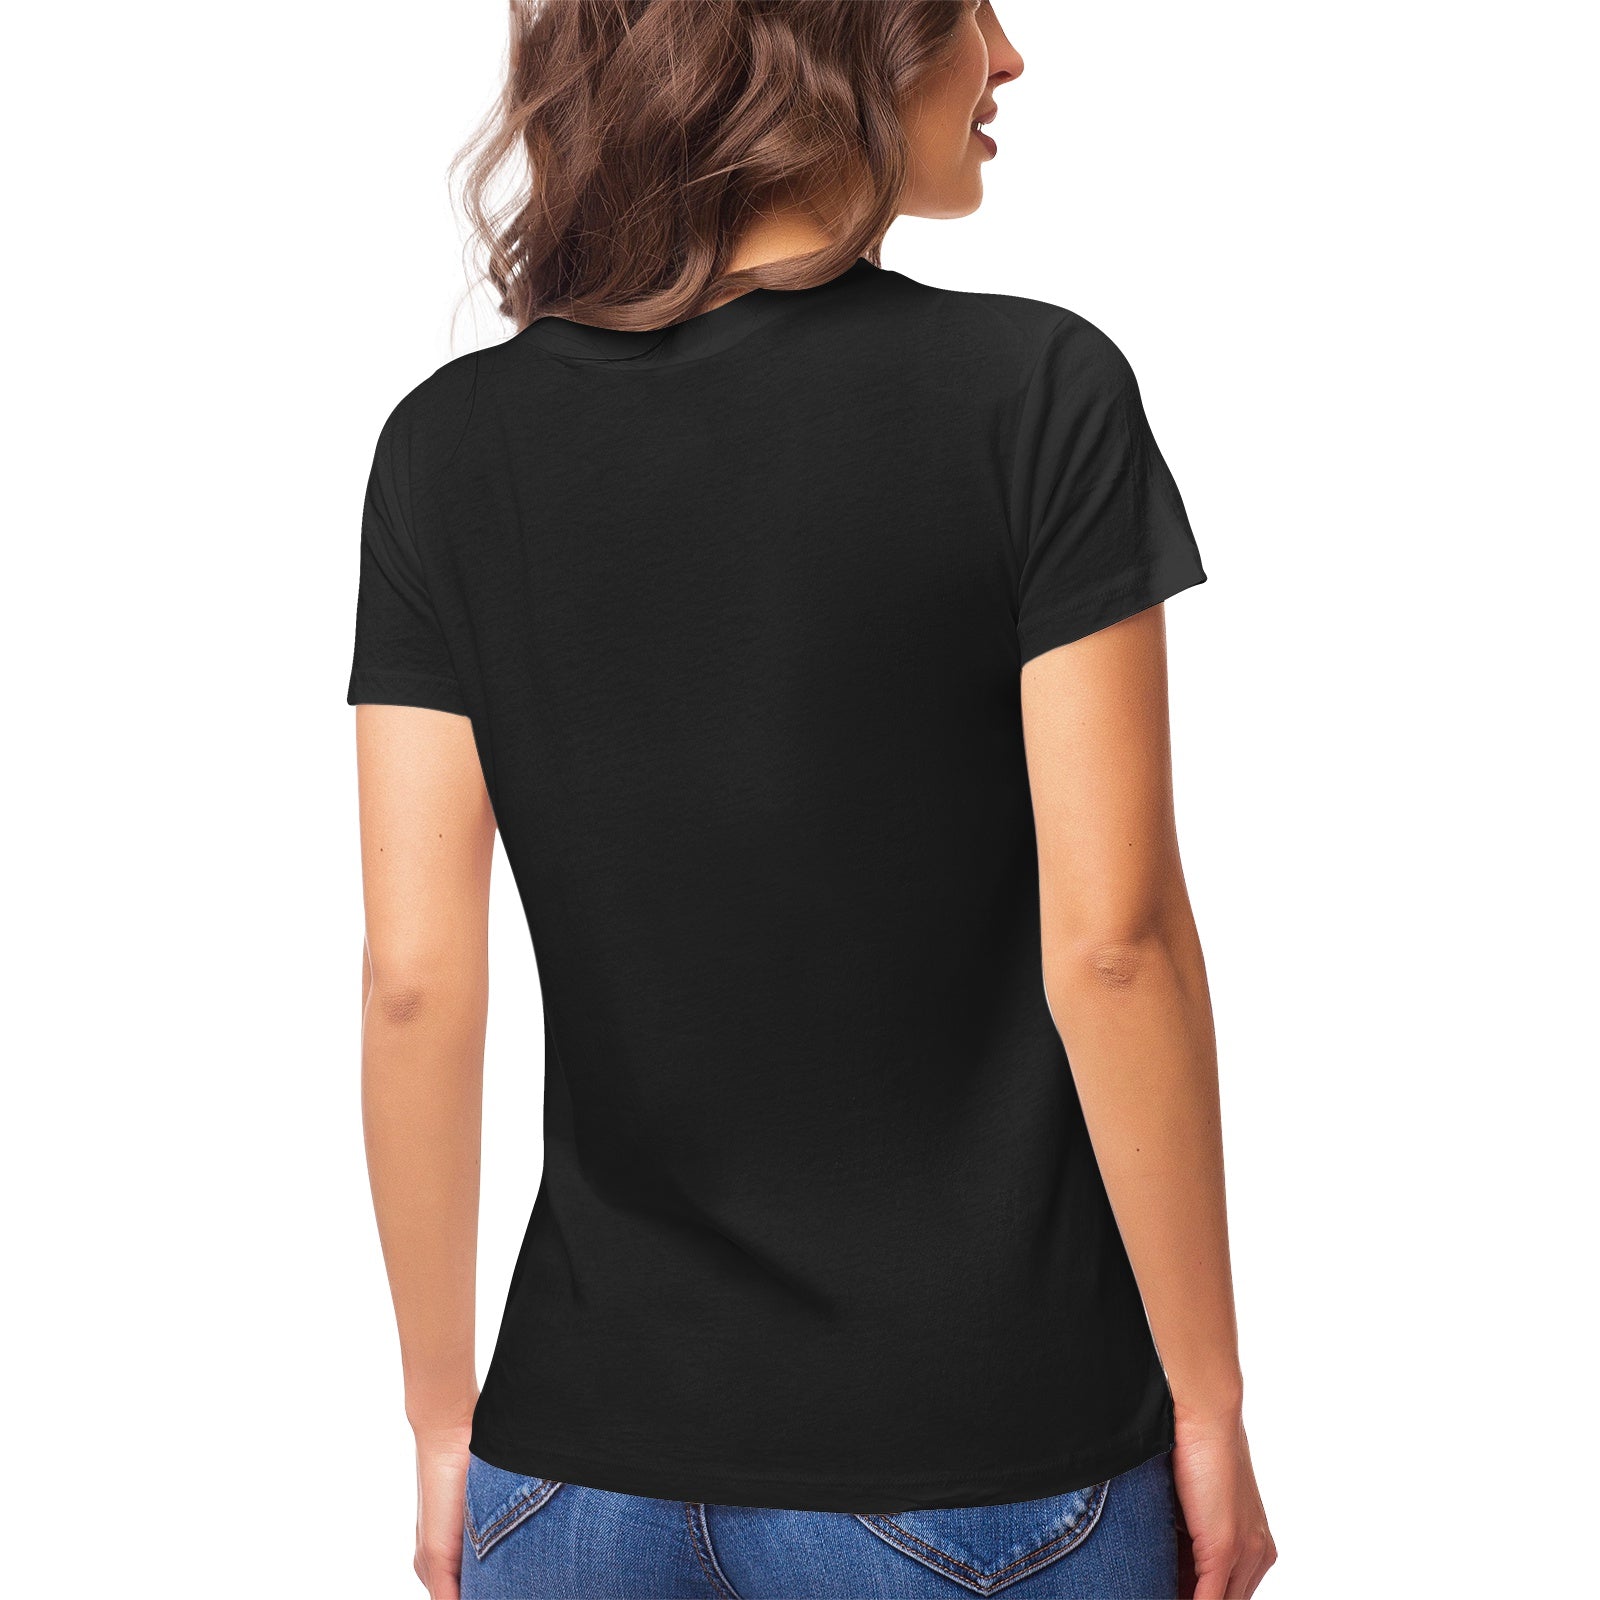 Yoga Cat 13 Women's Ultrasoft Pima Cotton T‑shirt - DromedarShop.com Online Boutique